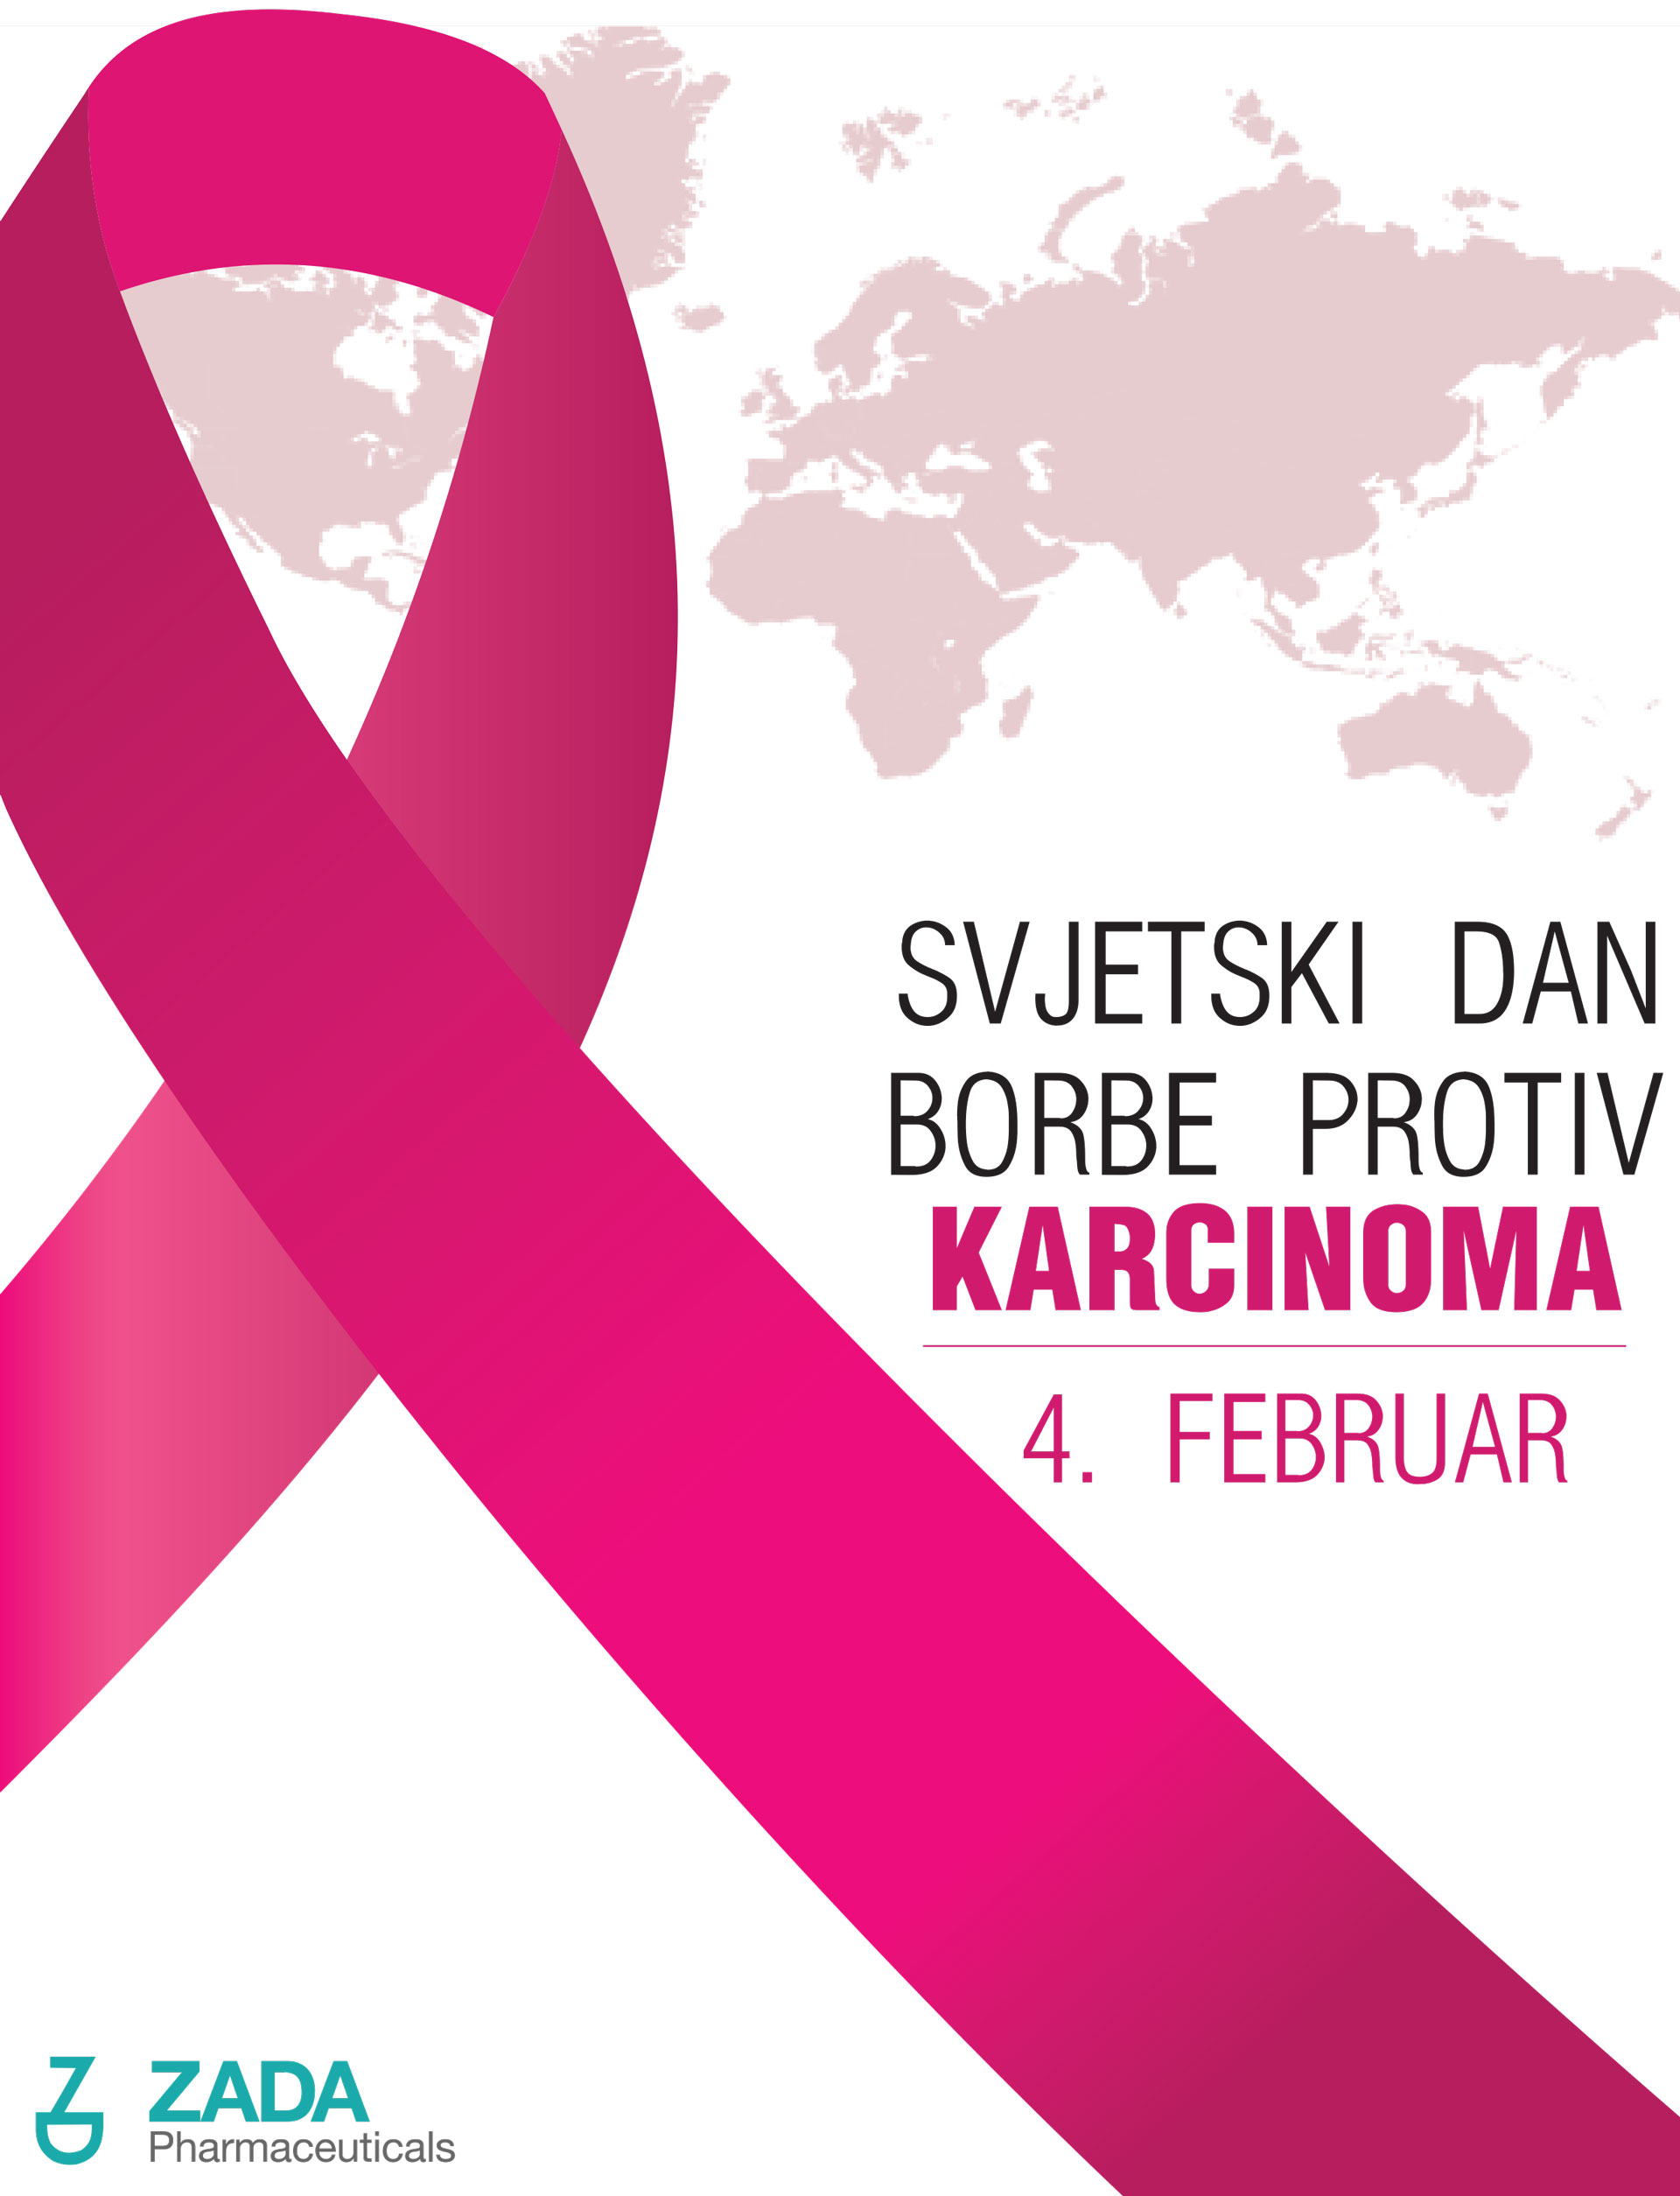 Svjetski dan borbe protiv karcinoma – 4. februar